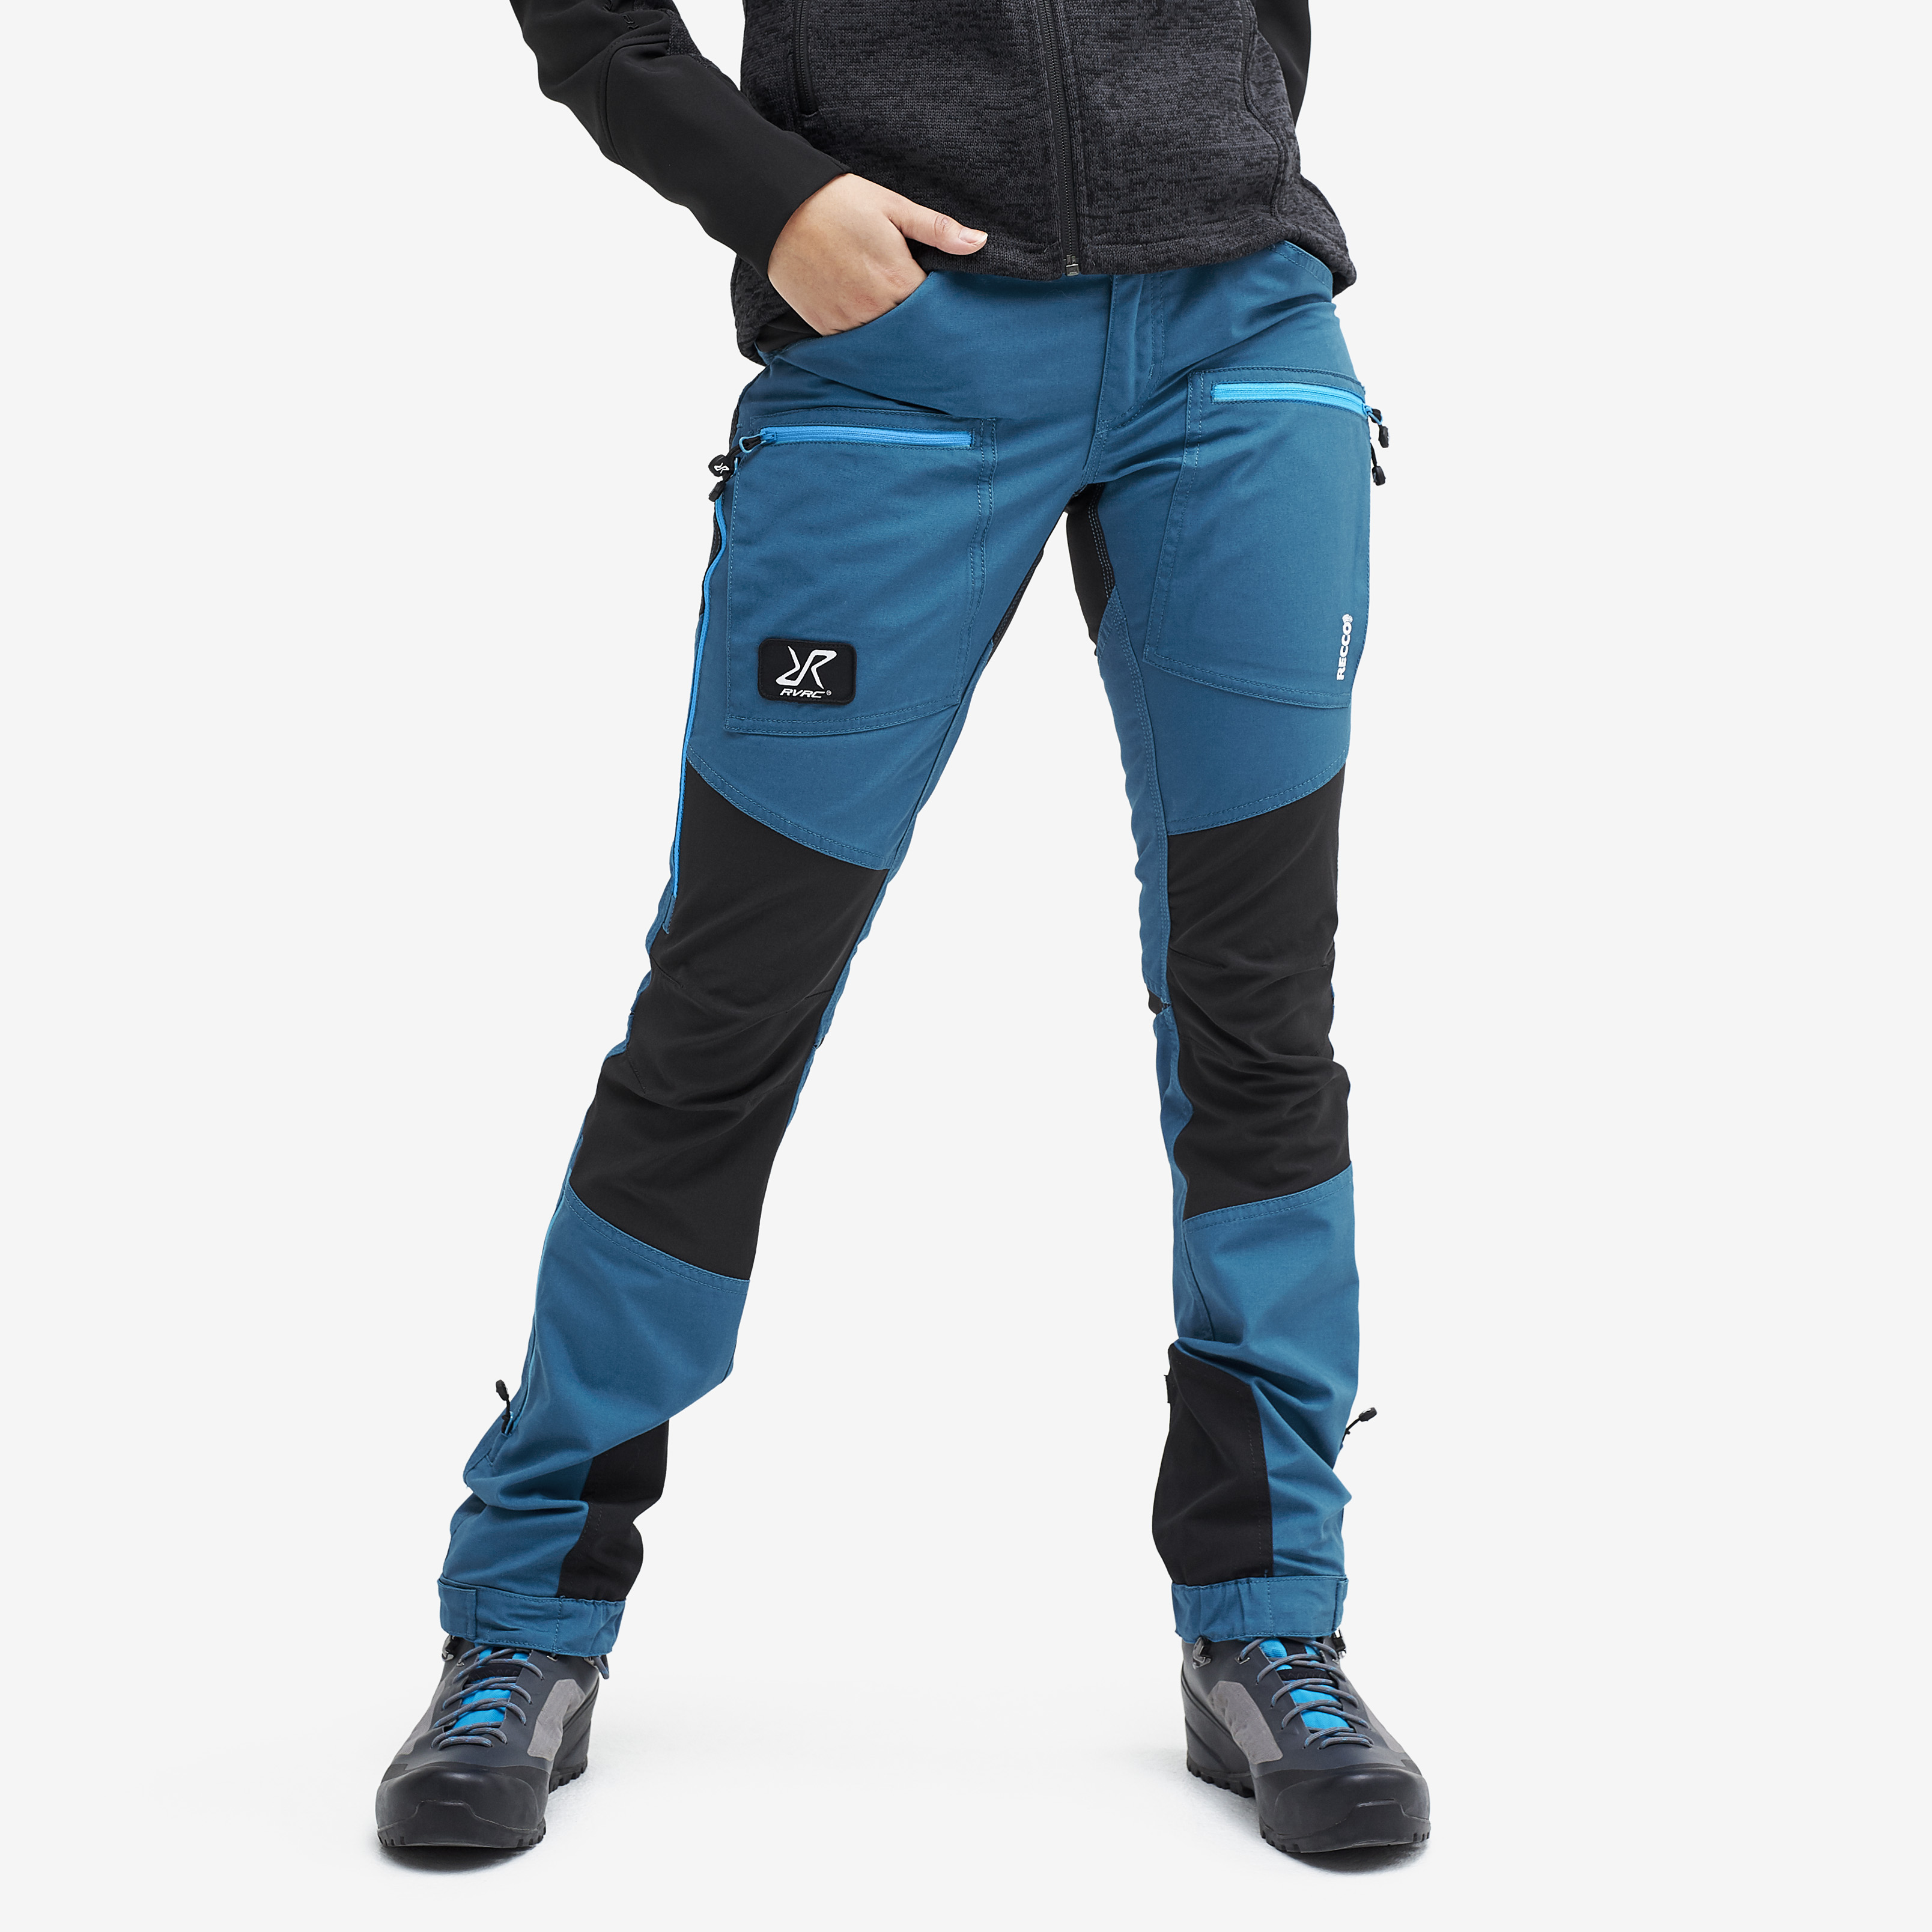 Nordwand Pro Rescue spodnie trekkingowe damskie niebieskie